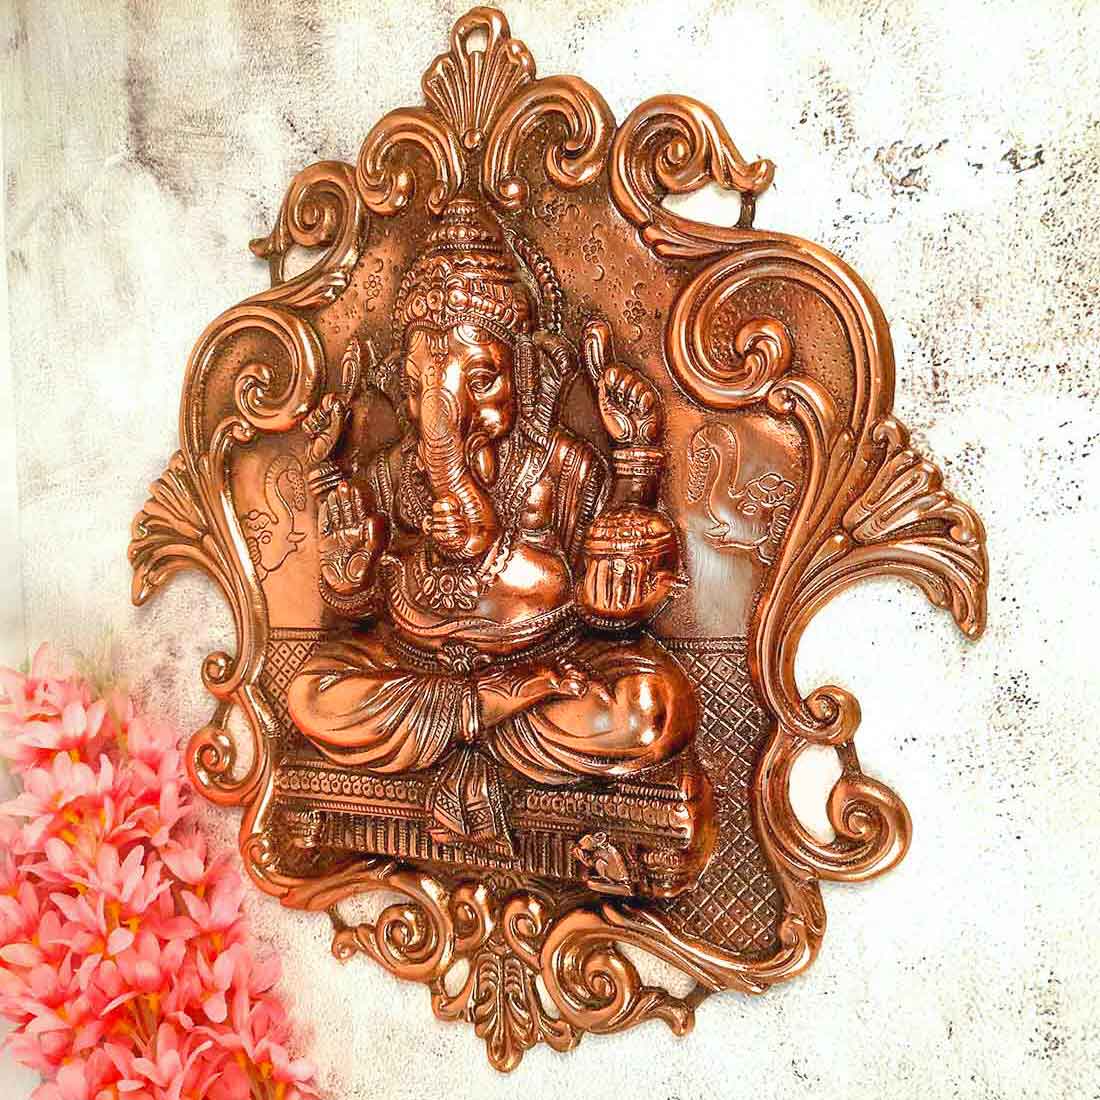 Ganesh Idol for Gift | Metal Wall Decor - 18 Inch - ApkaMart